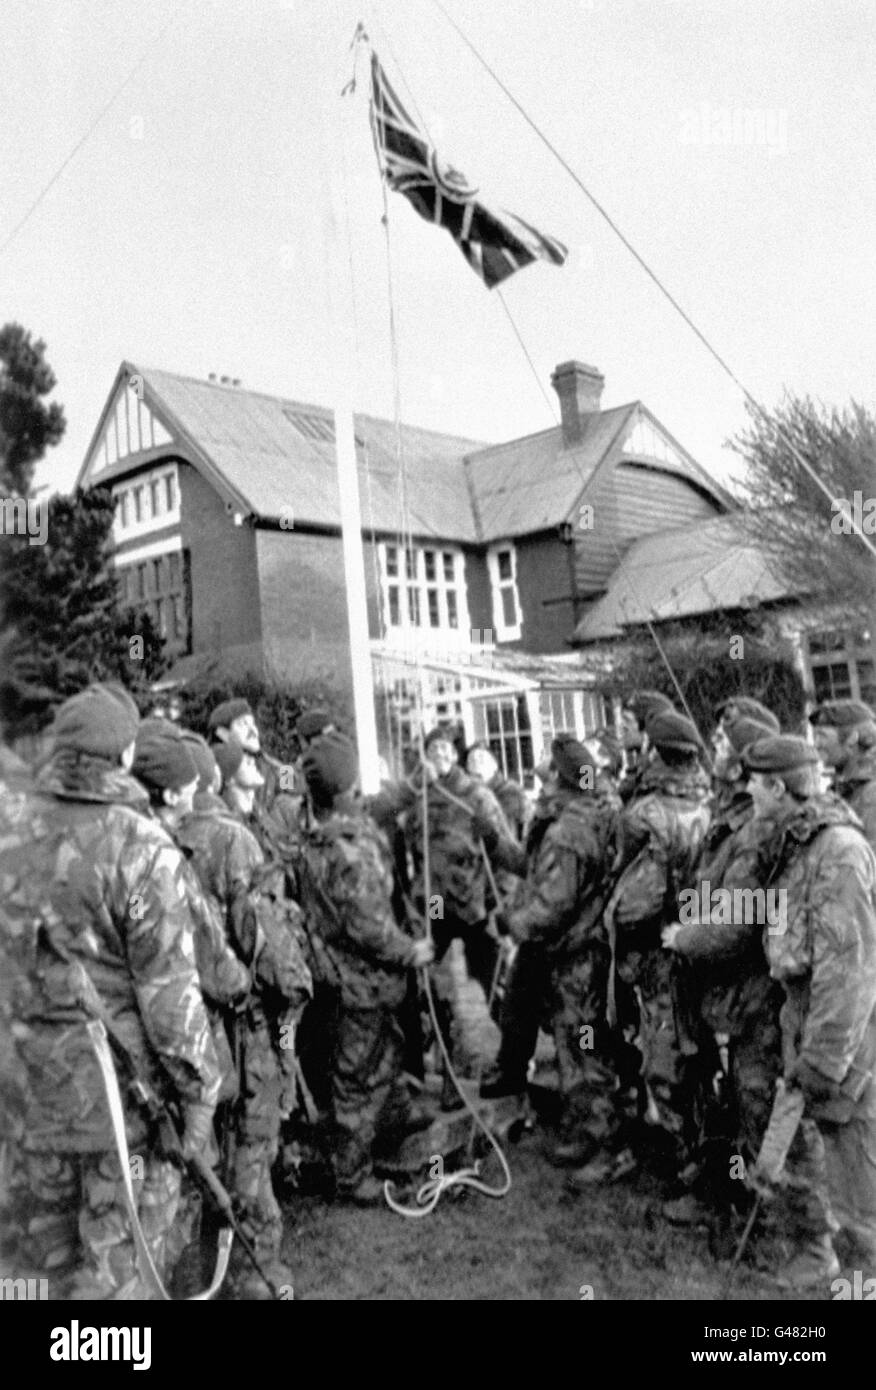 Royal Marines heben am 14/06/82 nach der Kapitulation der argentinischen Streitkräfte im Falklandkrieg wieder die Unionsflagge am Regierungsgebäude in Port Stanley. * 15/6/97 Baroness Thatcher enthüllte eine Gedenktafel für britische Militärangehörige, die im Falklandkrieg, der vor 15 Jahren endete, ums Leben kamen (14/6/97). Sie besuchte eine Zeremonie in Gosport, Hants und enthüllte die Gedenktafel am Ufer des Solent, wo Tausende von Freunden und Verwandten Abschied von den ausscheidenden Schiffen winkten und ihre Besatzungen nach Hause begrüßten. Stockfoto